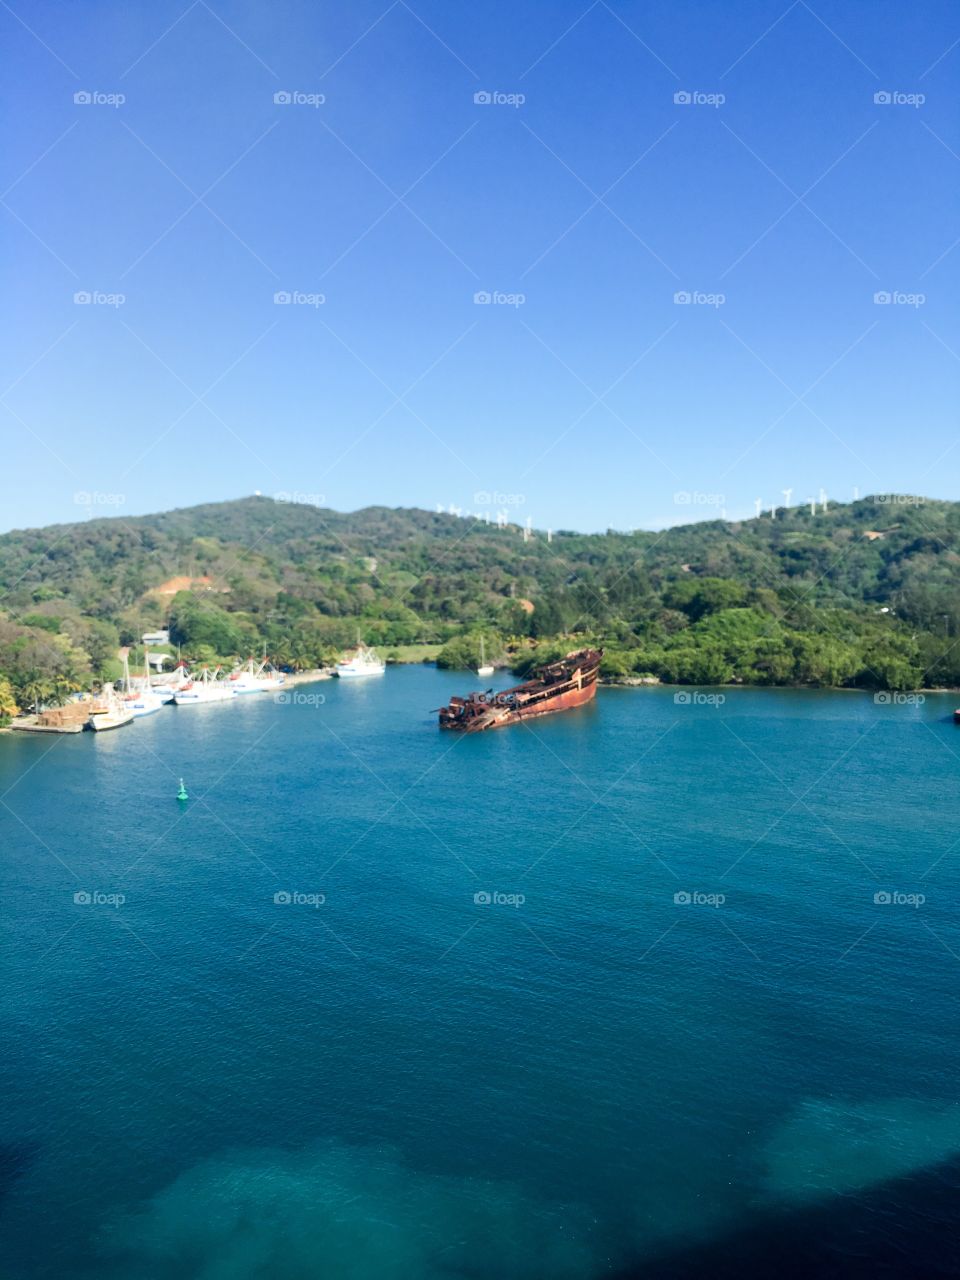 Shipwreck in Honduras - Mahogany Bay